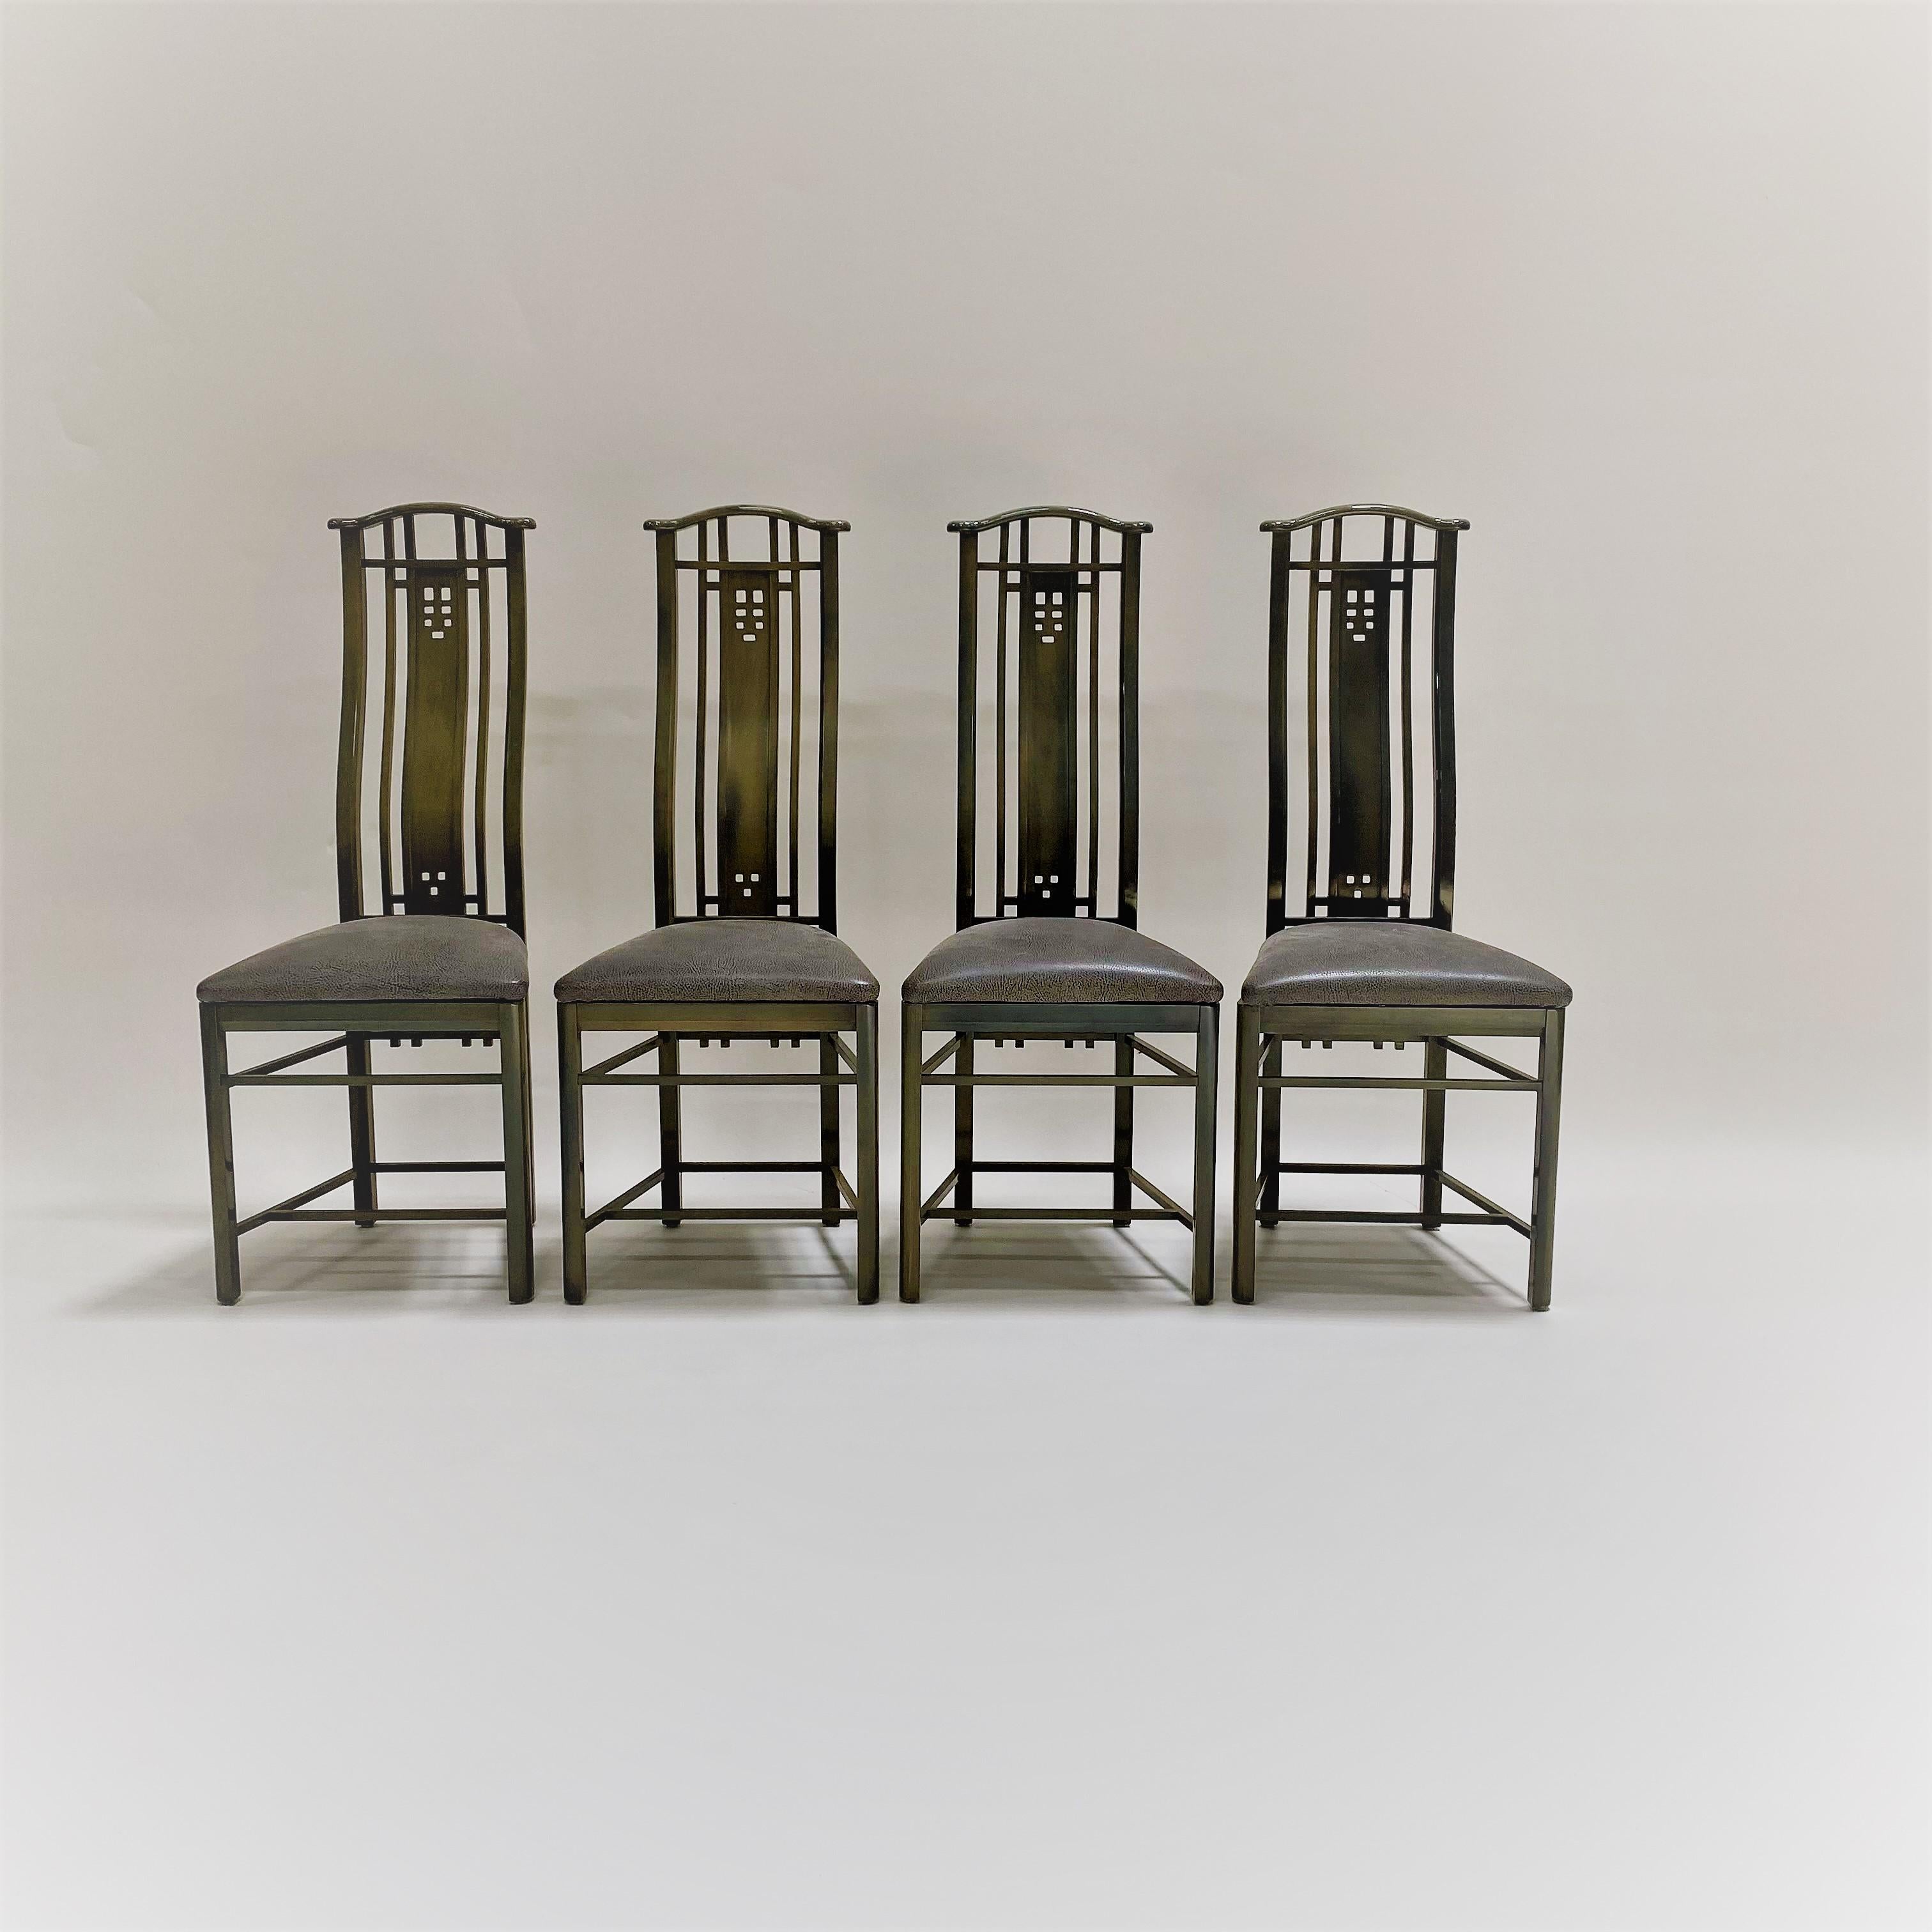 Élégantes chaises de salle à manger au design italien, conçues par Umberto Asnago pour Giorgetti. 

L'ensemble se compose de 4 chaises de salle à manger à haut dossier en bois massif, avec le dossier d'origine.  rembourrage. Laque brillante deux